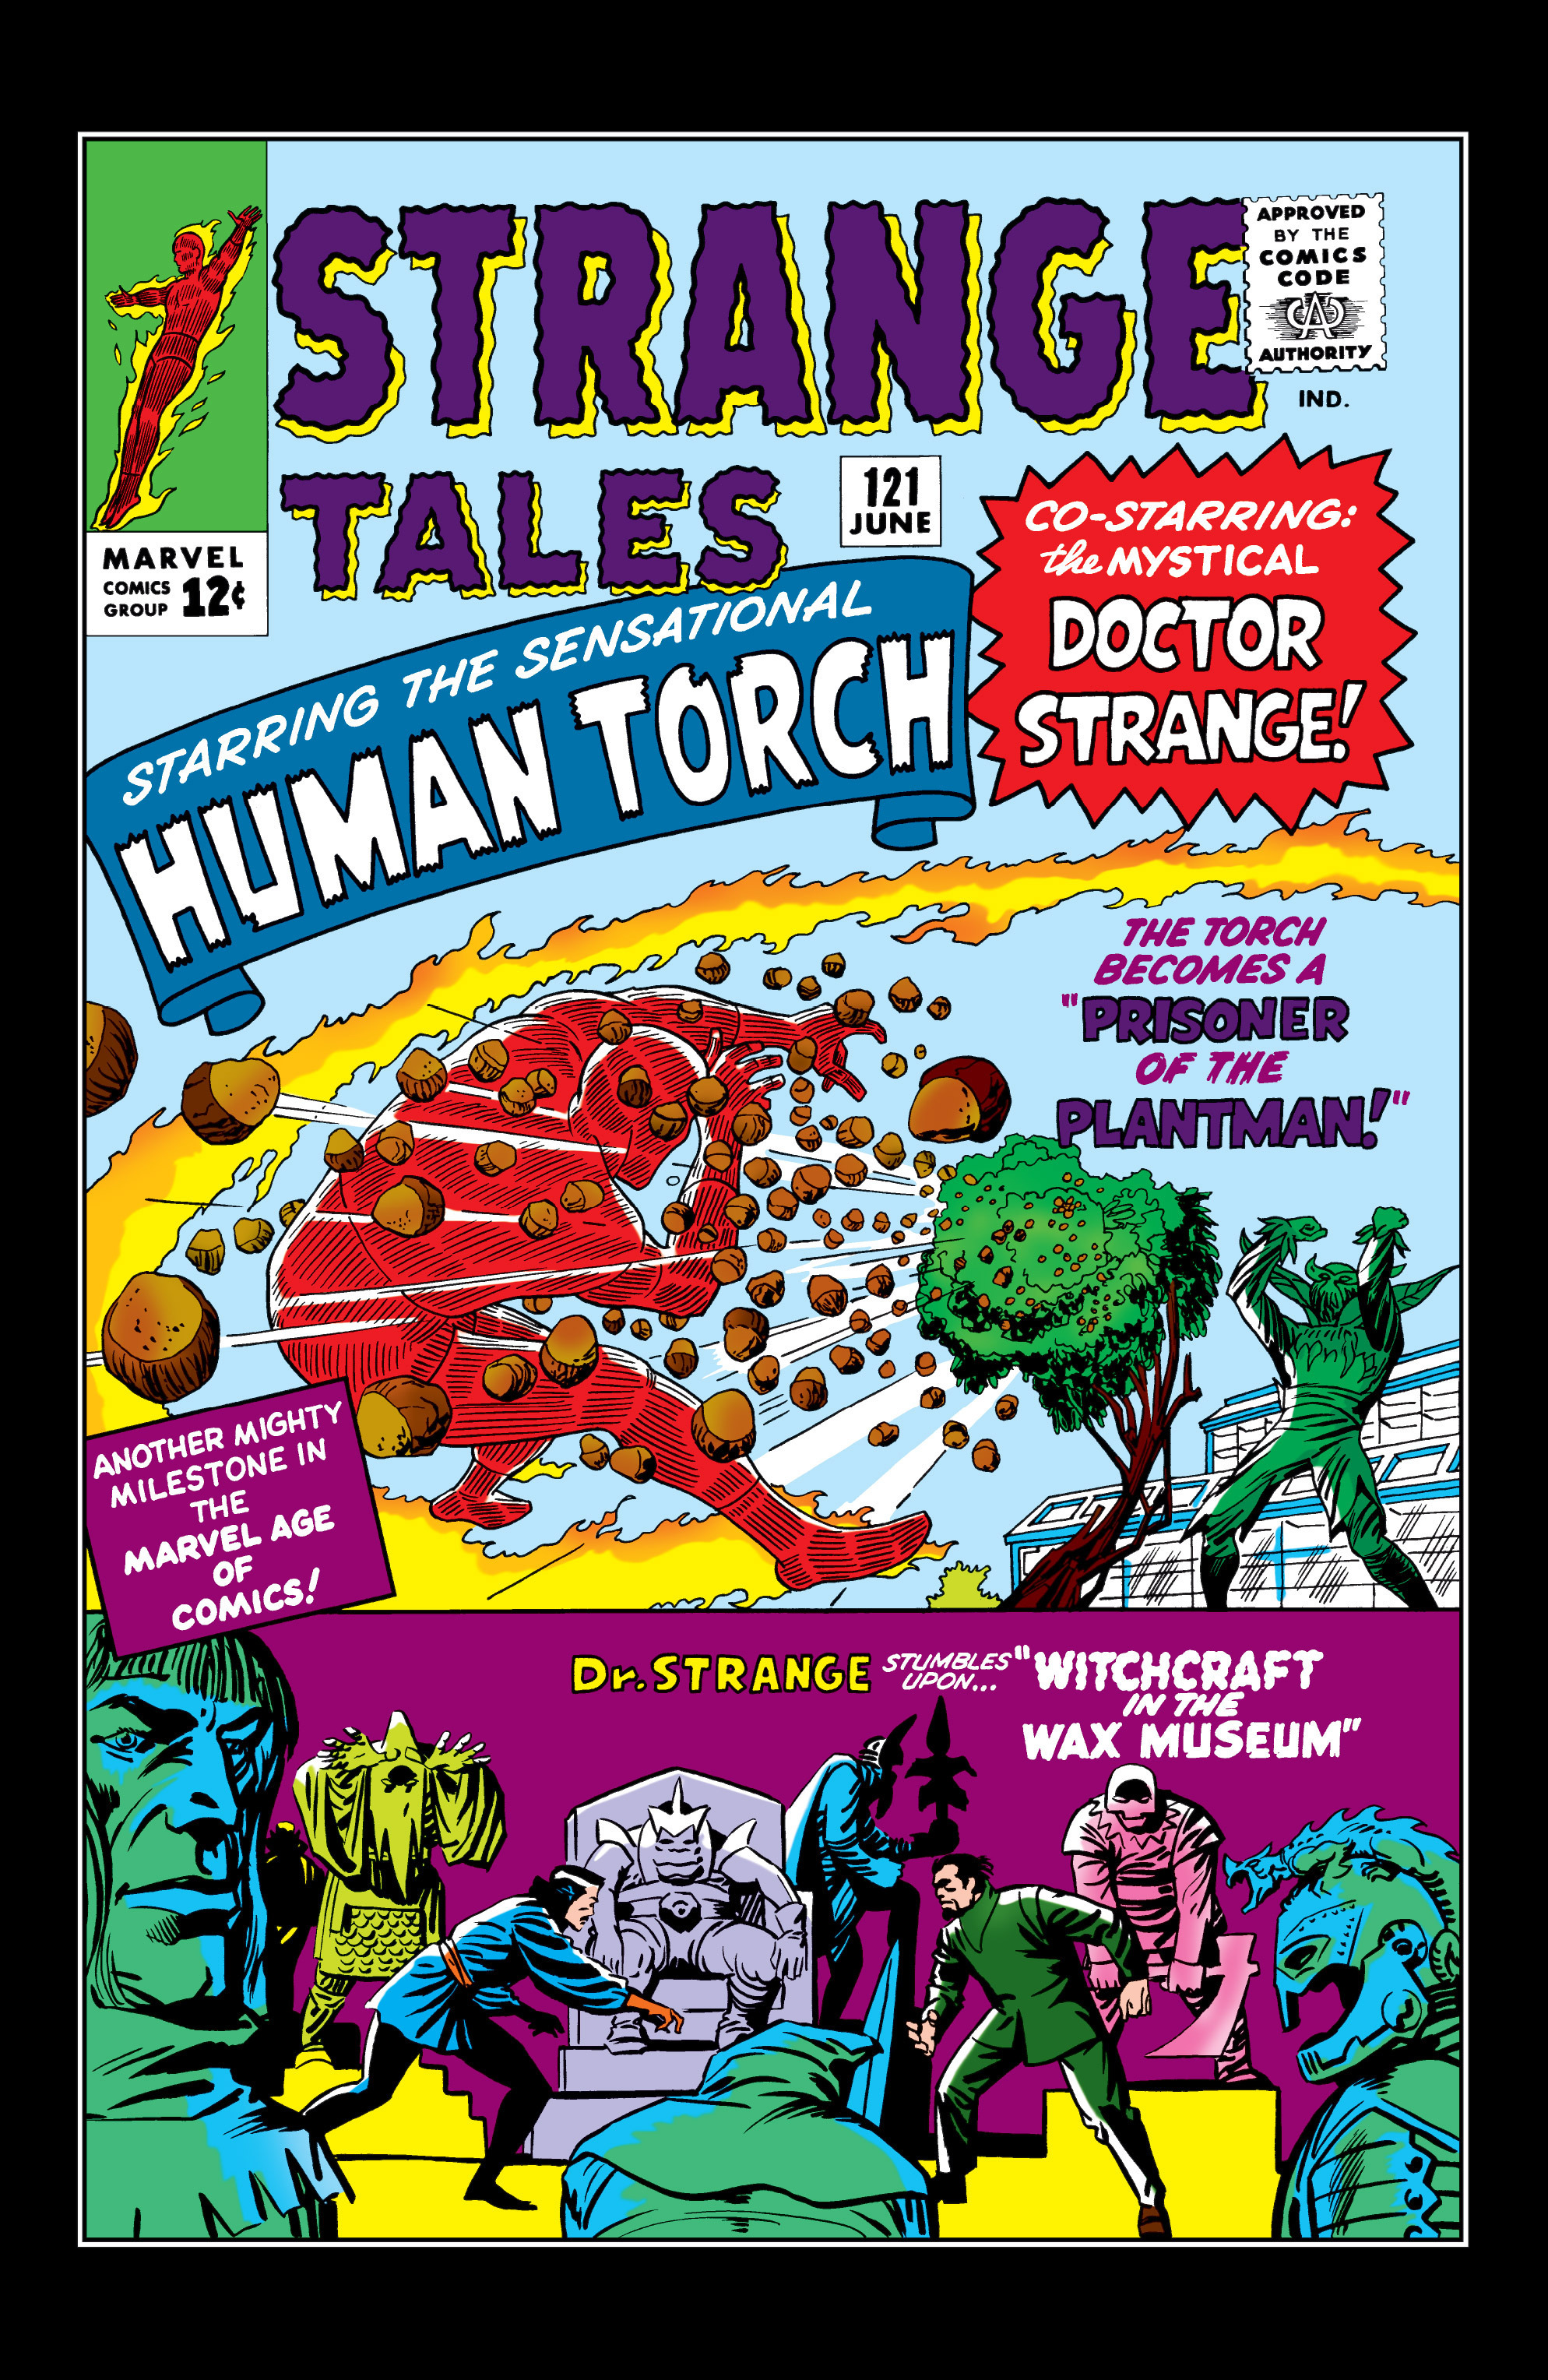 Read online Marvel Masterworks: Doctor Strange comic -  Issue # TPB 1 - 79